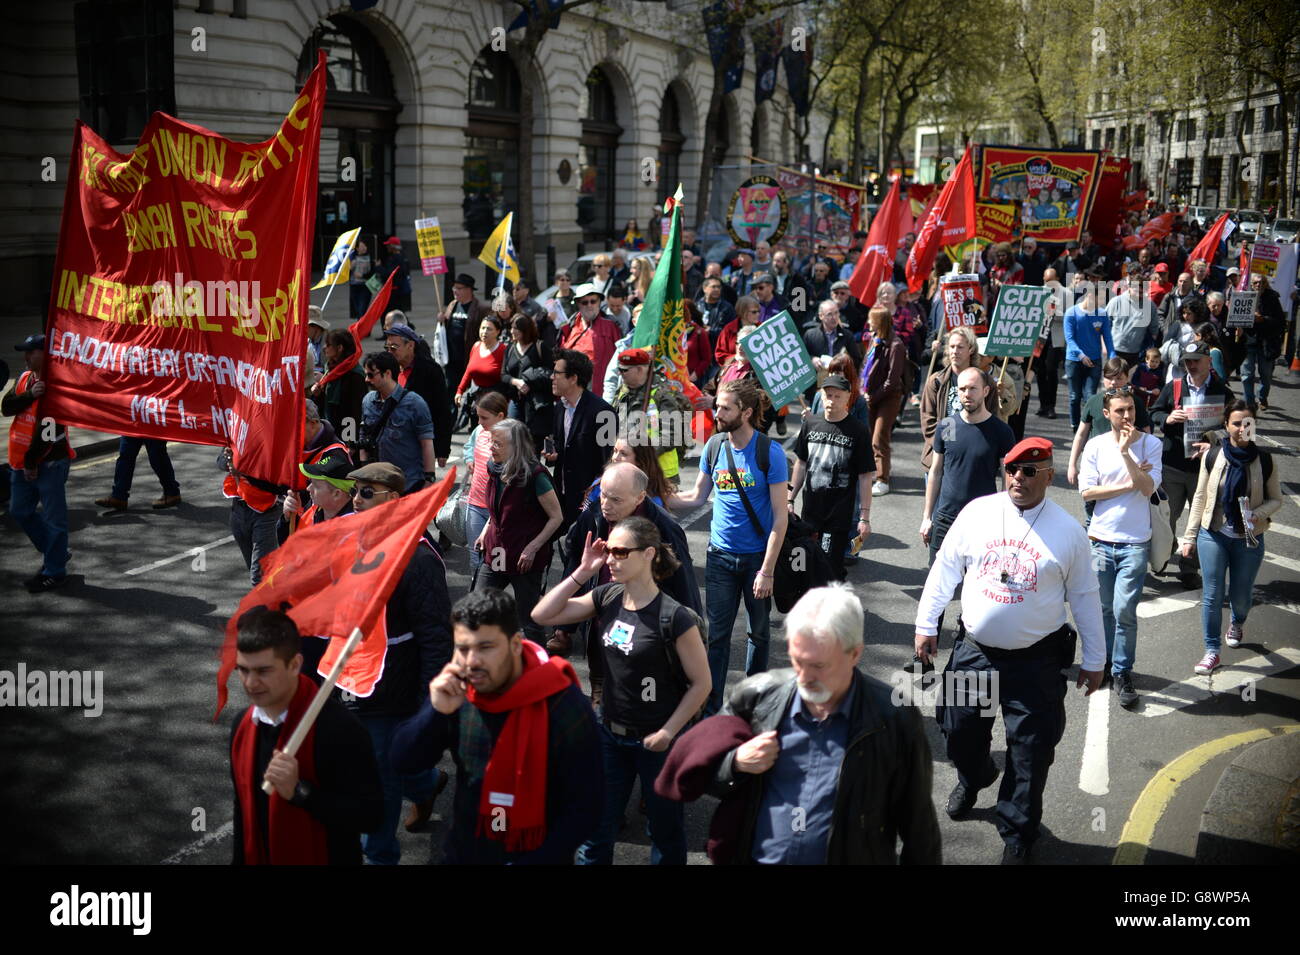 Tausende marschieren zum Trafalgar Square im Zentrum von London, um die Errungenschaften der Arbeiter bei einer Kundgebung am 1. Mai zu feiern, bei der Jeremy Corbyn den Antisemitismus verurteilte. Stockfoto